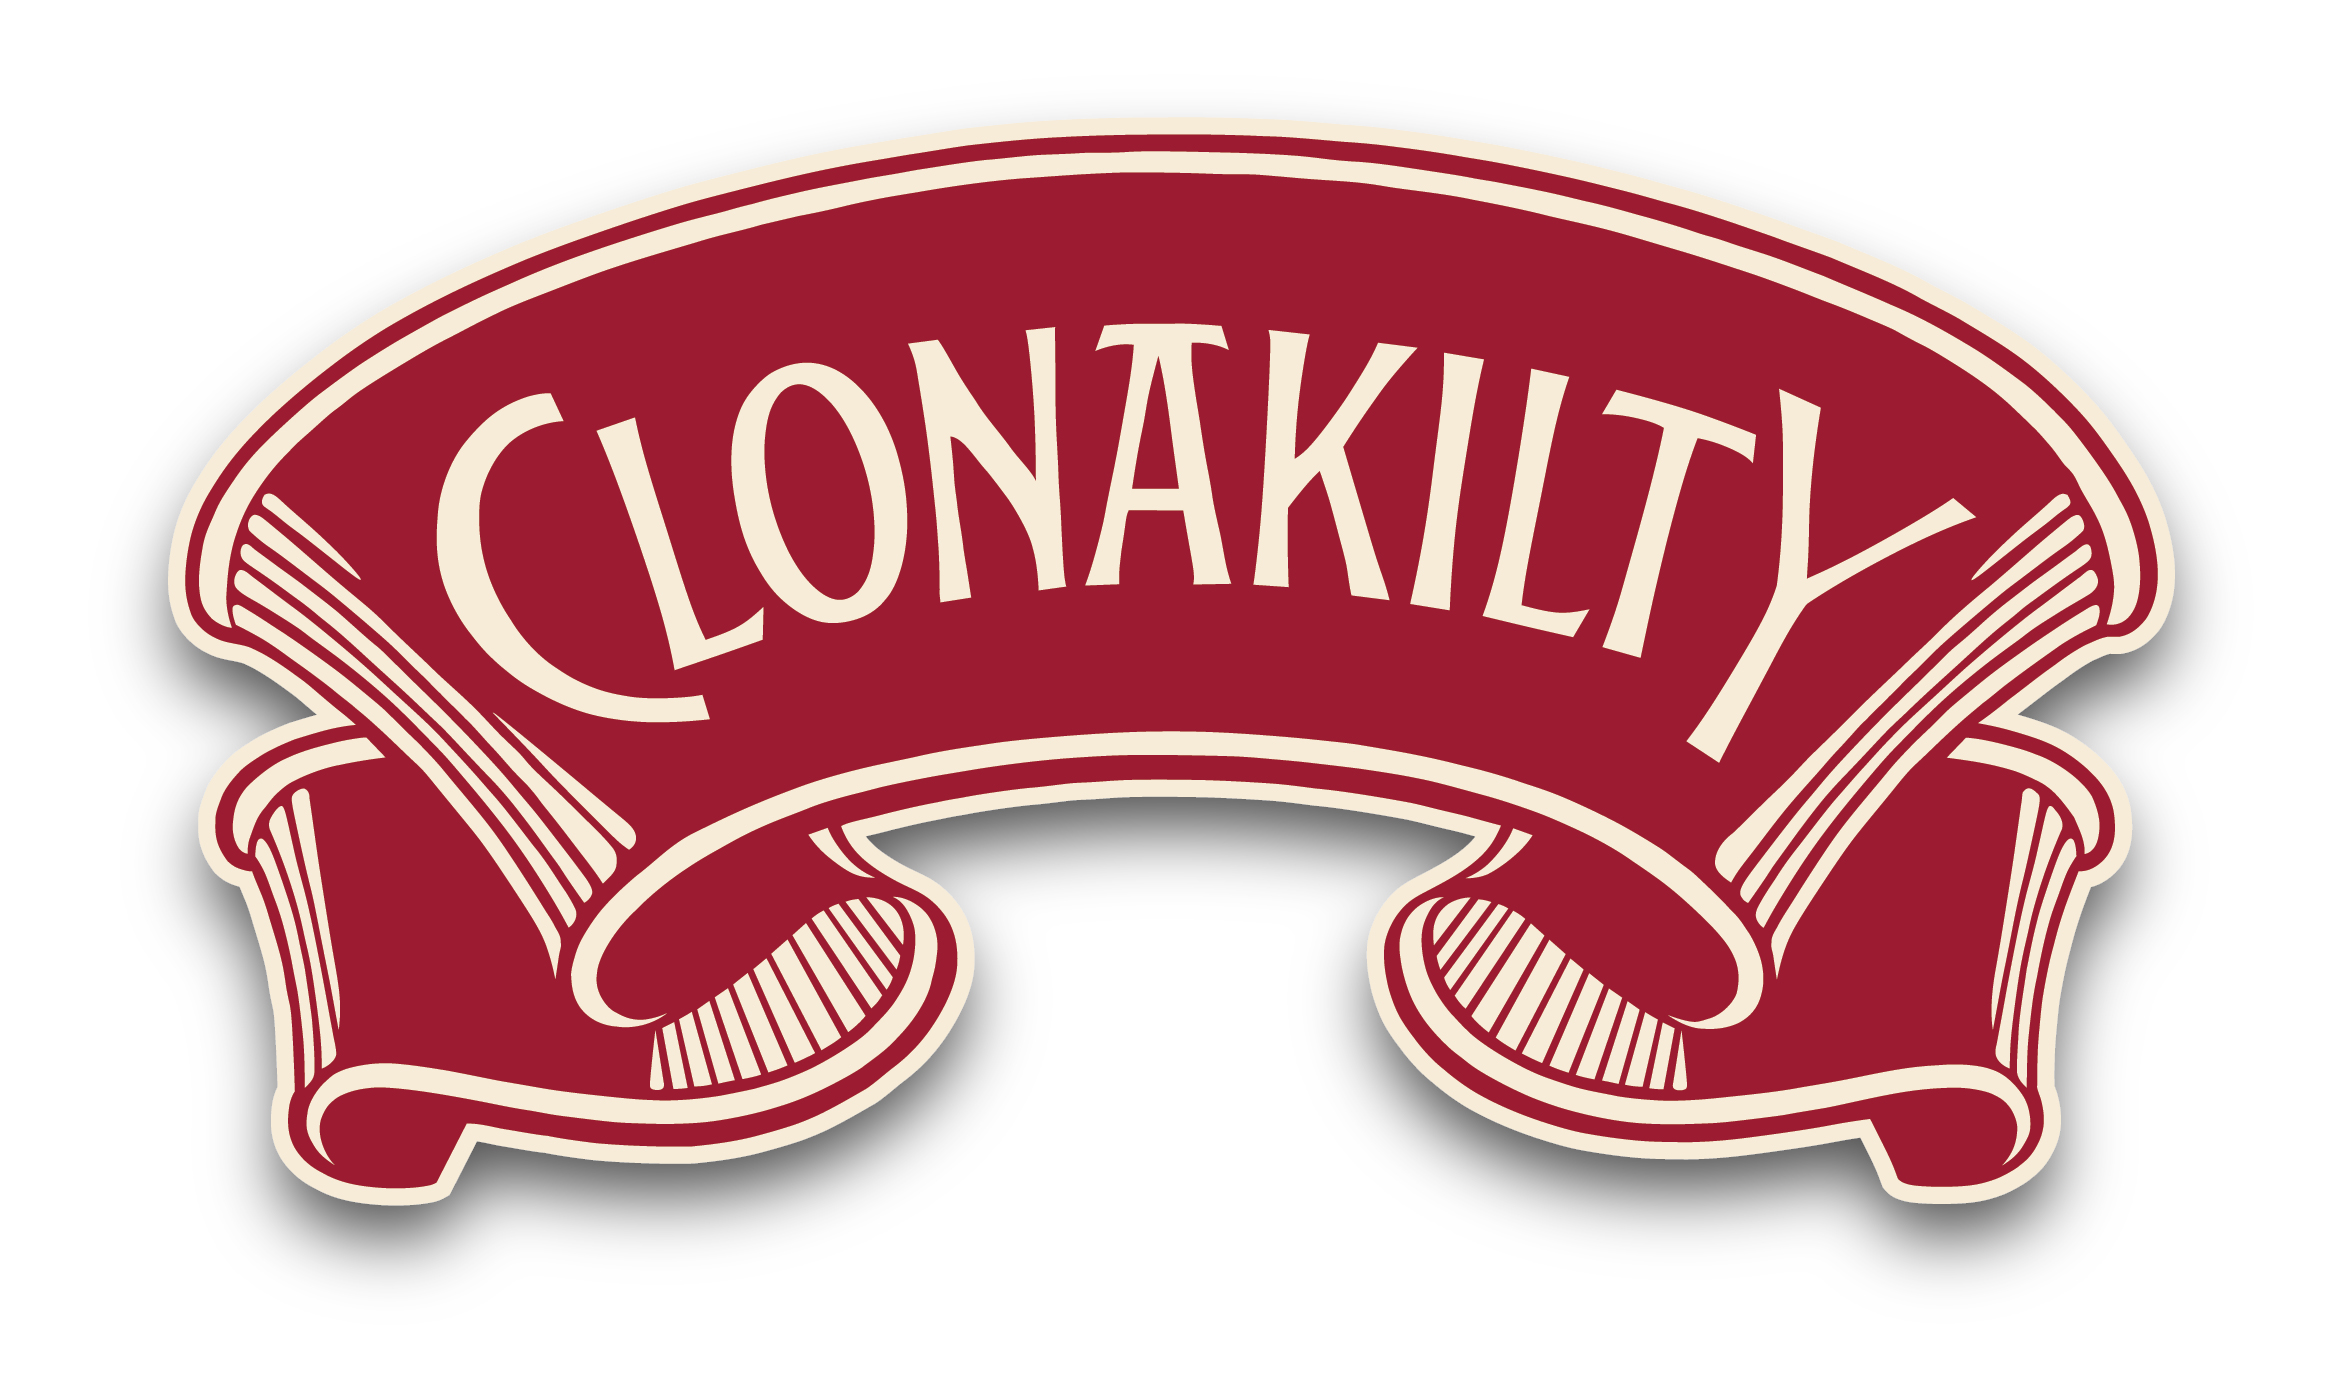 Clonakilty Food Company